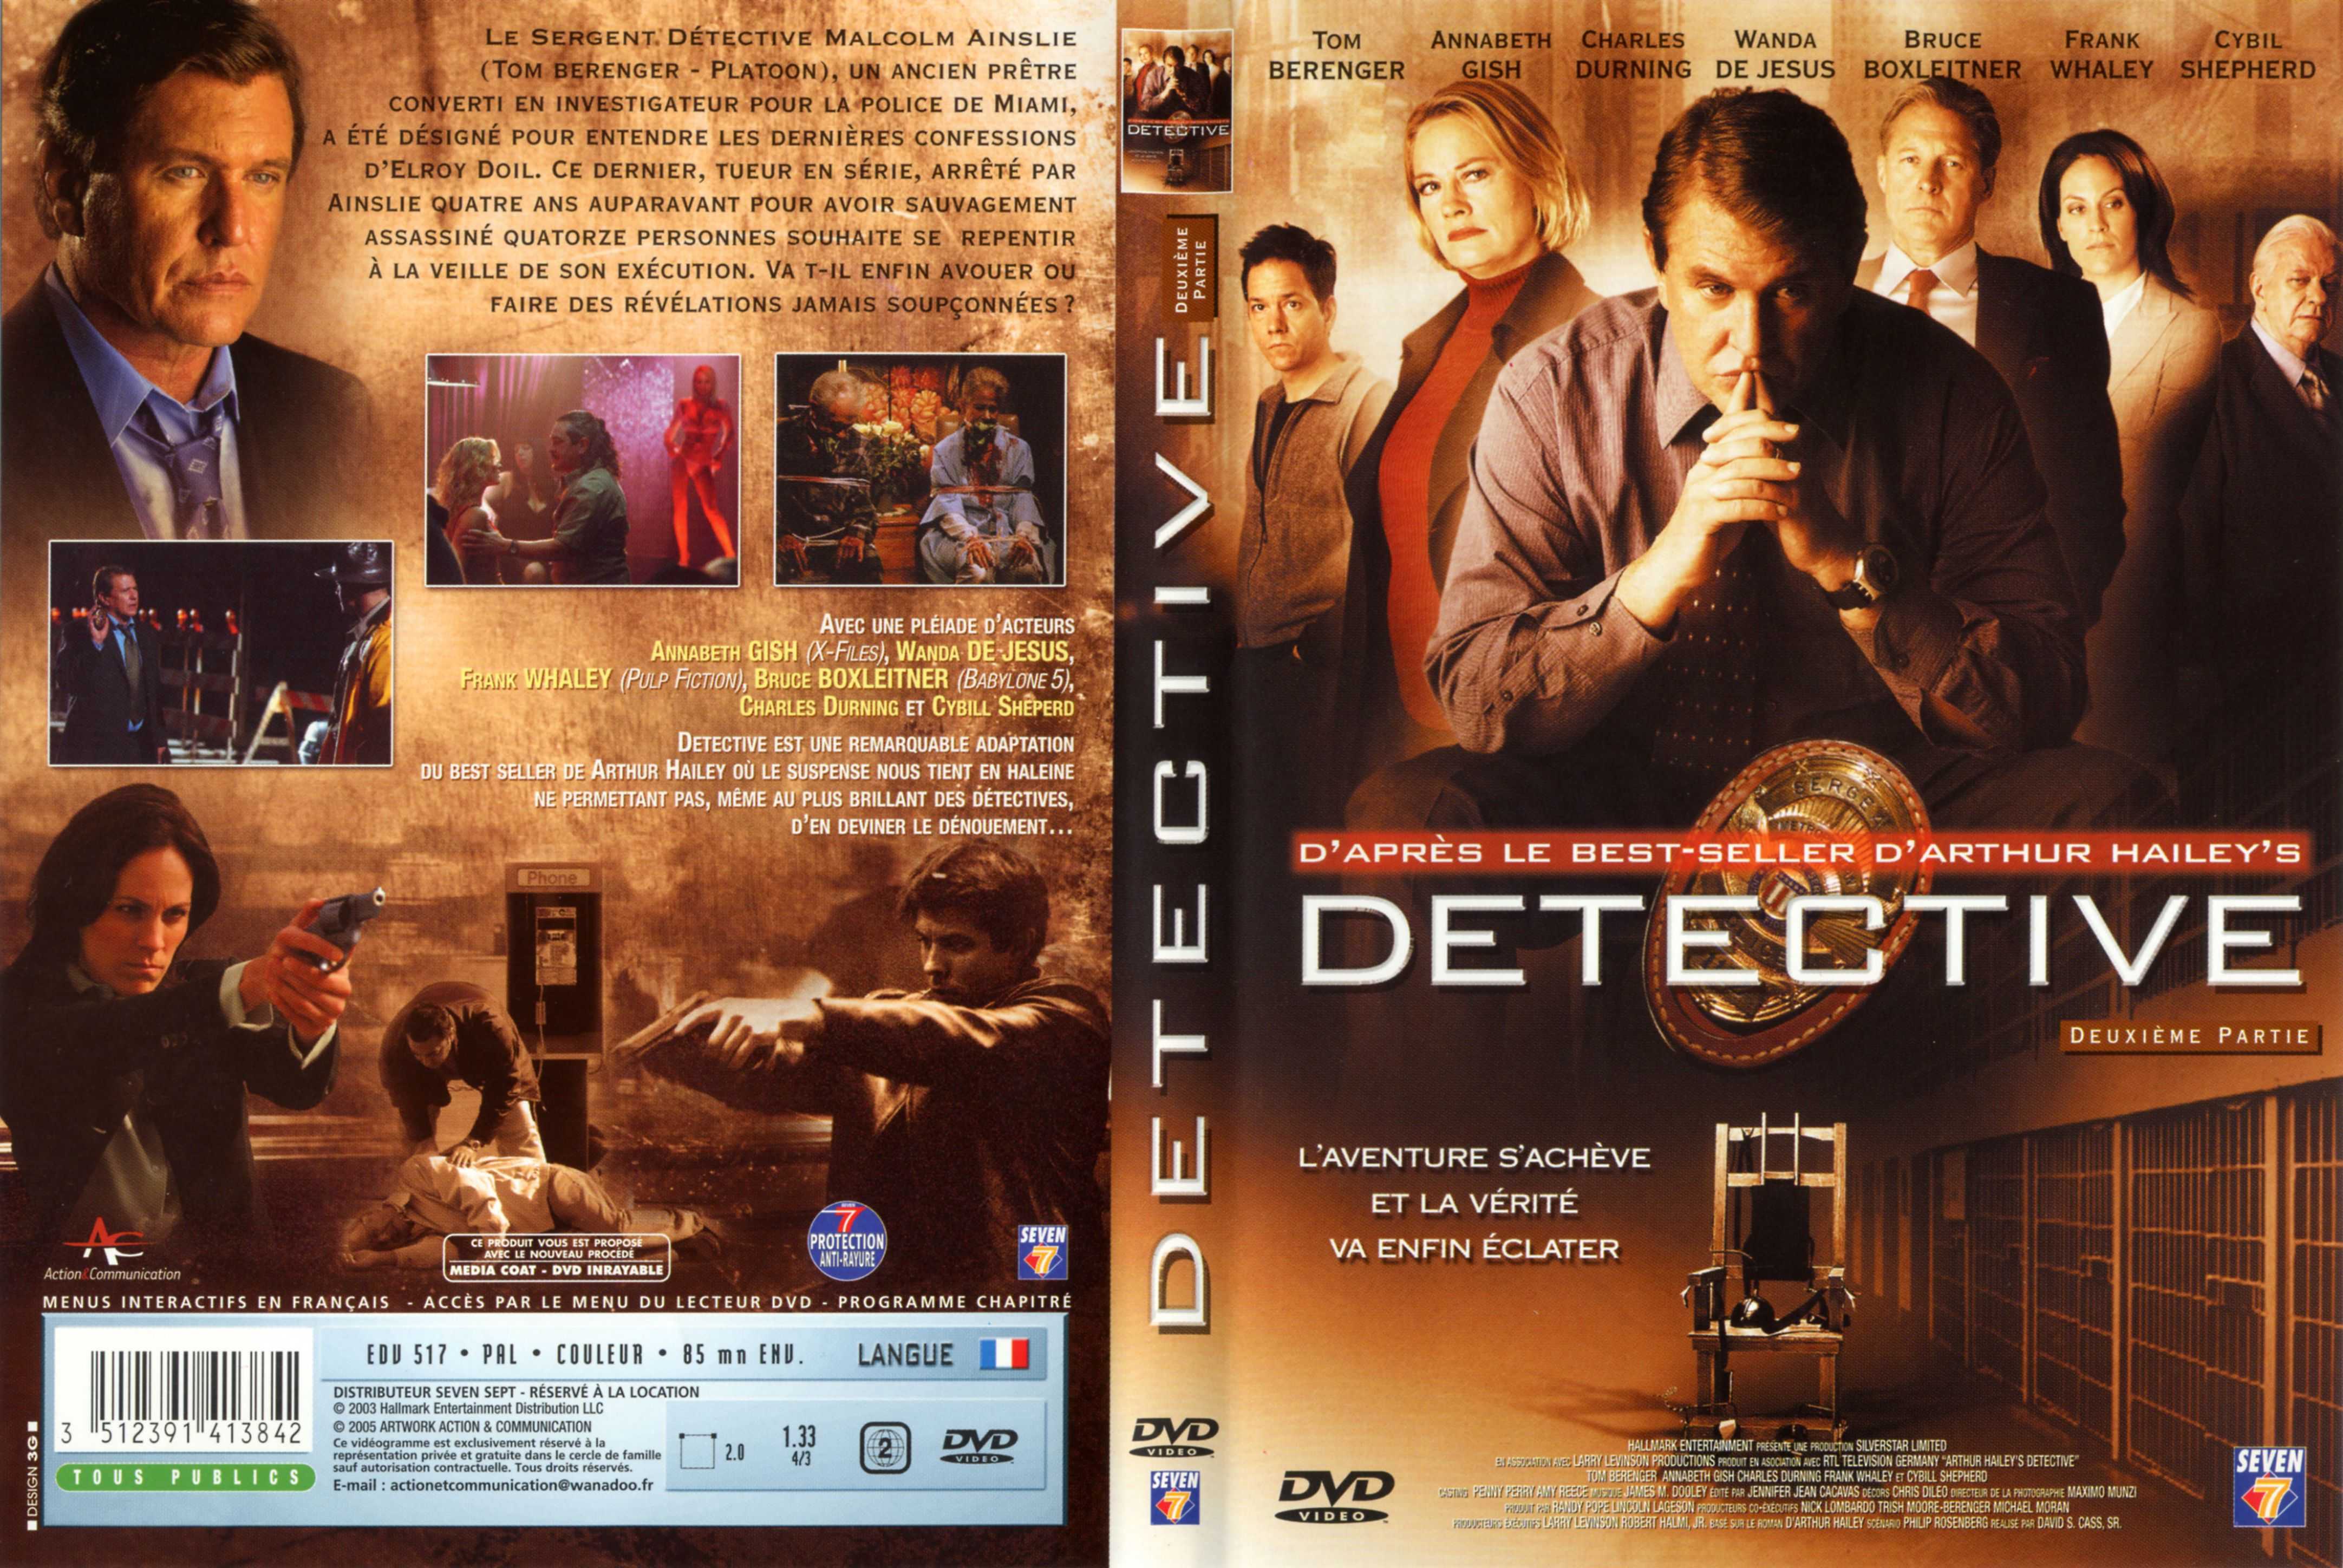 Jaquette DVD Detective vol 02